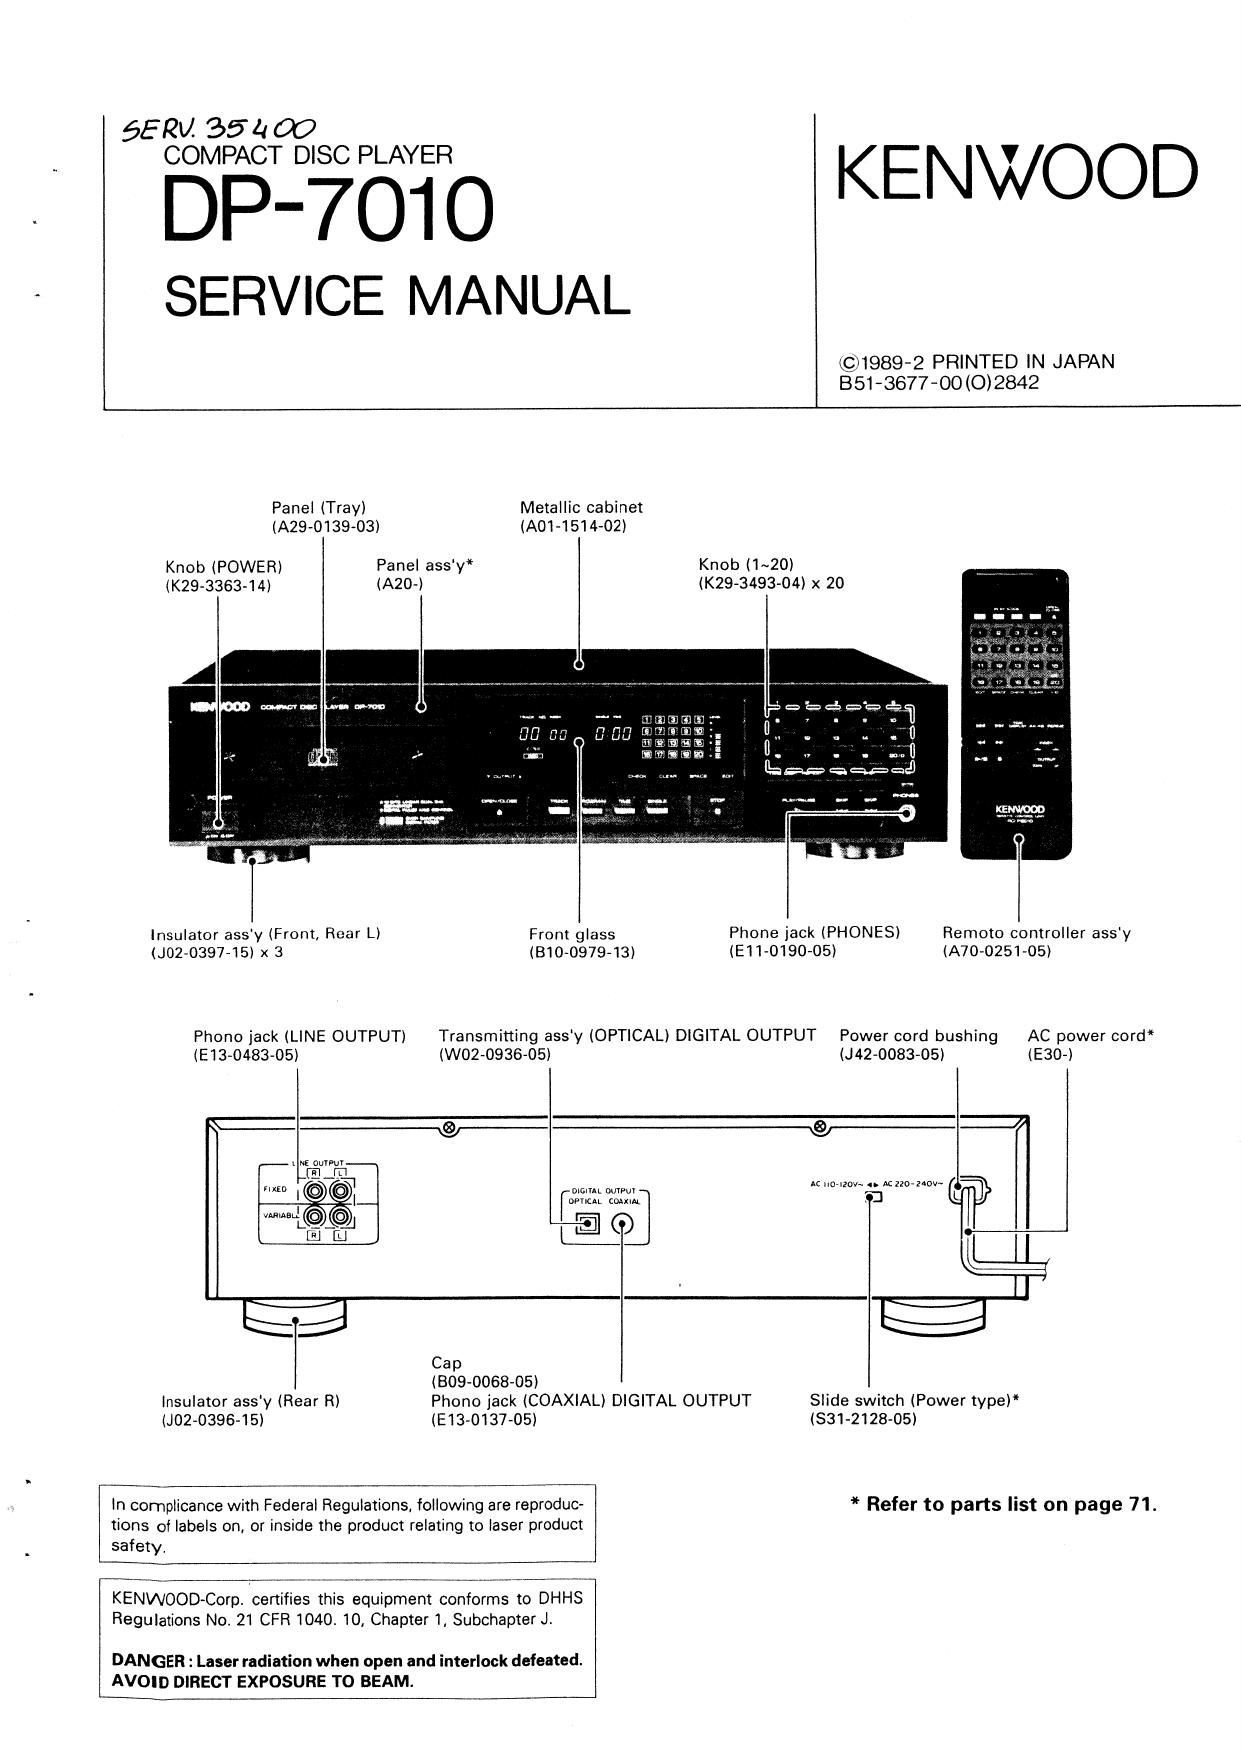 Kenwood DP 7010 Service Manual